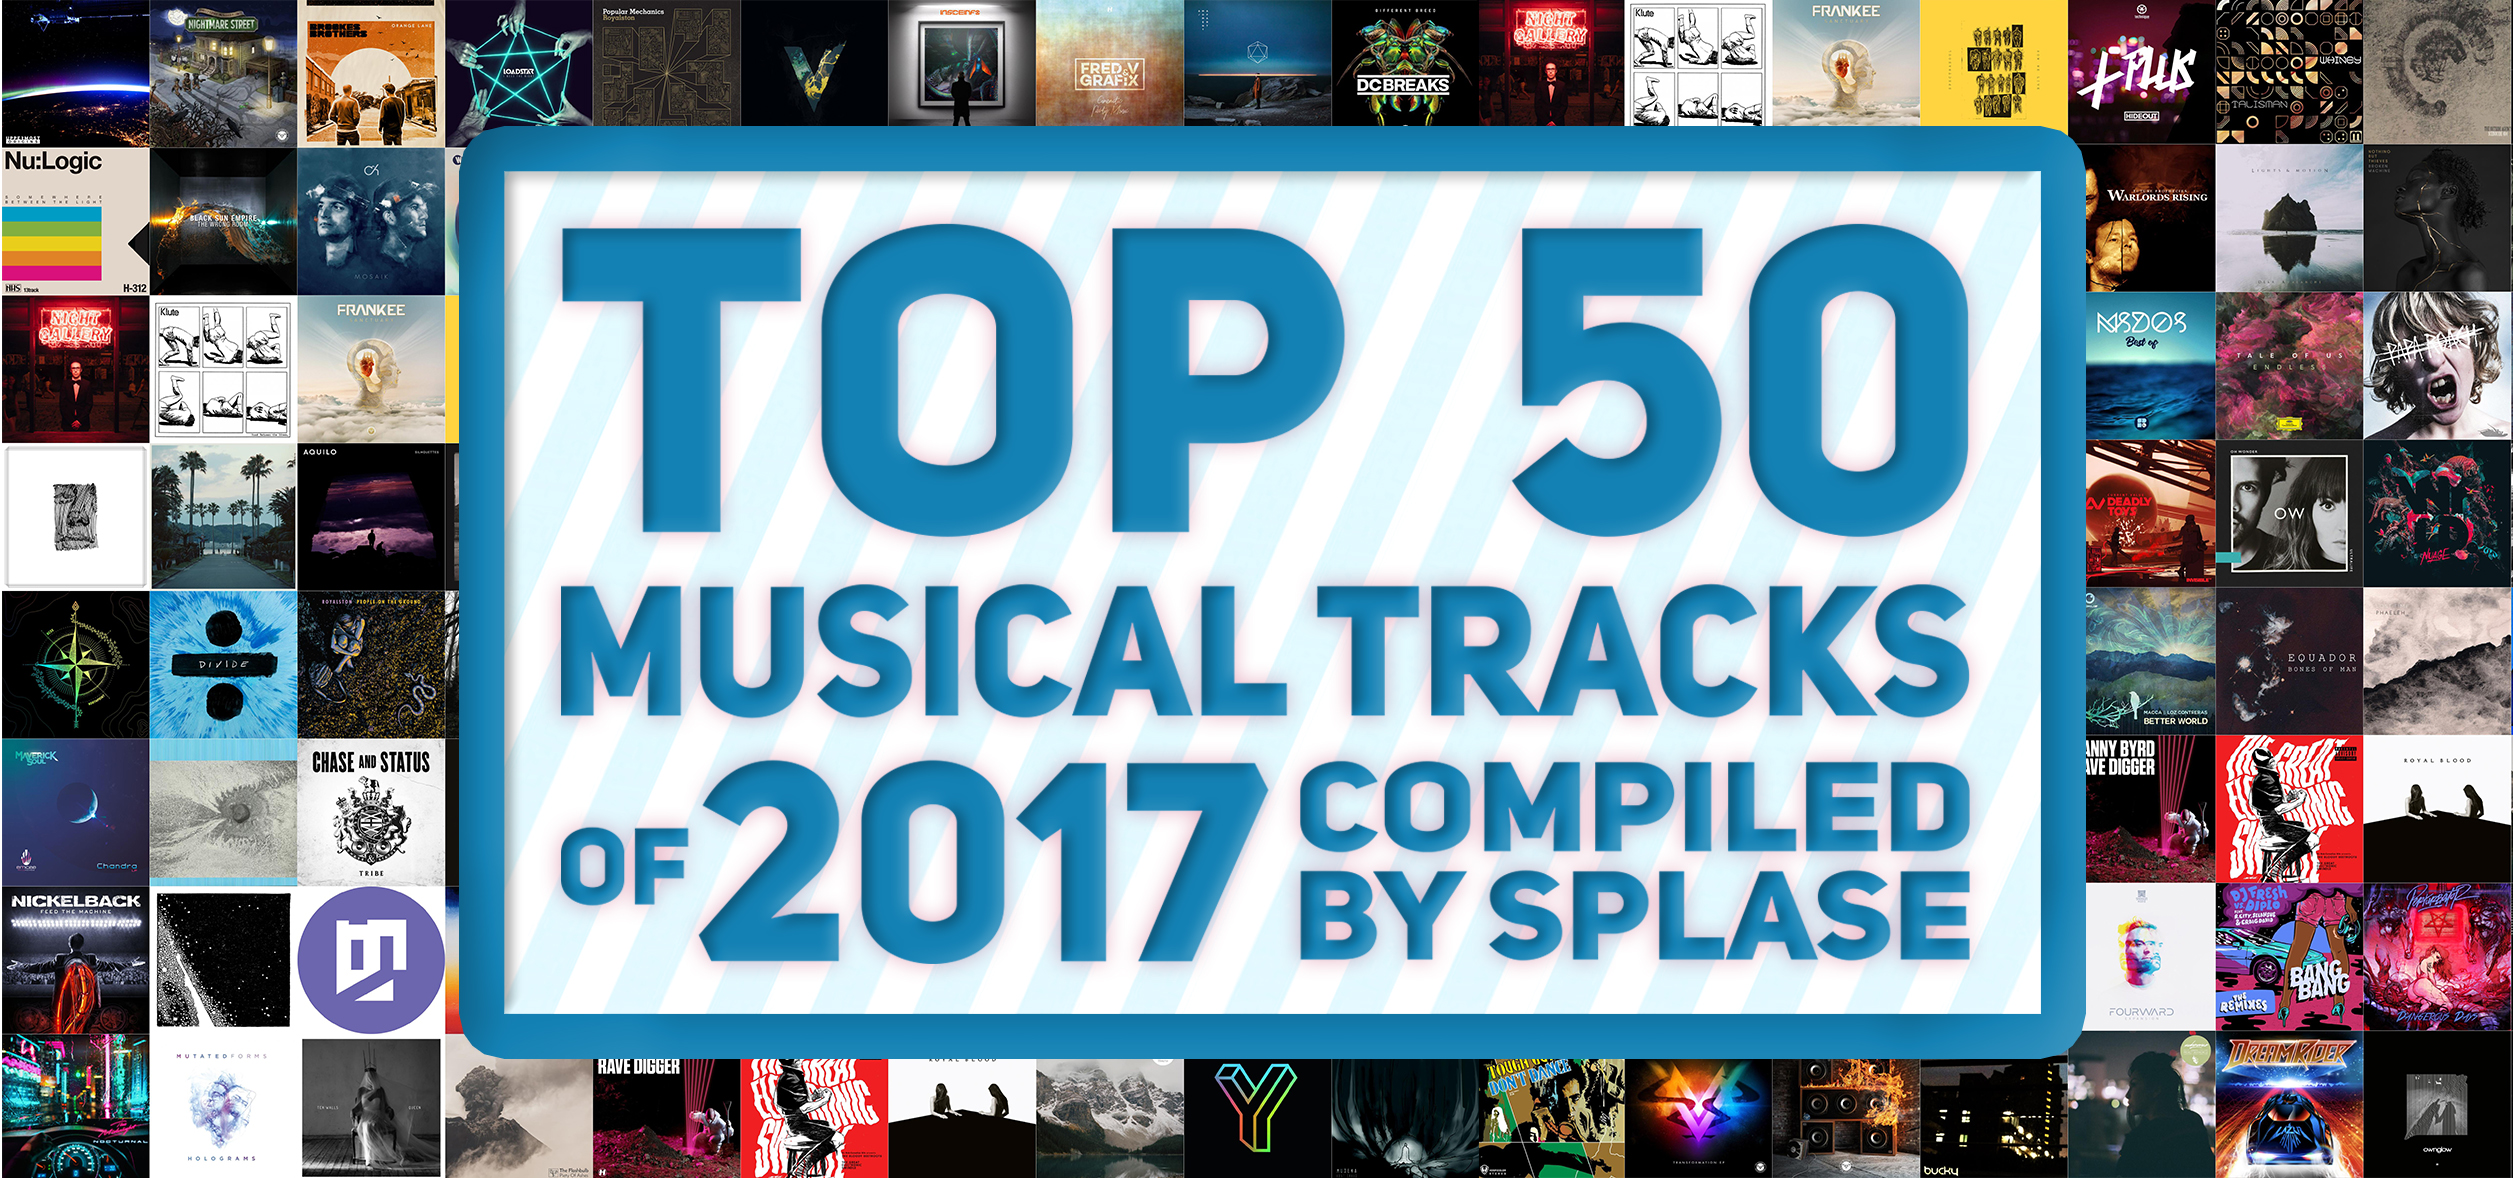 ТОП 50 Музыкальных треков 2017 года по моей версии / TOP 50 Musical Tracks of 2017 compiled by Splase